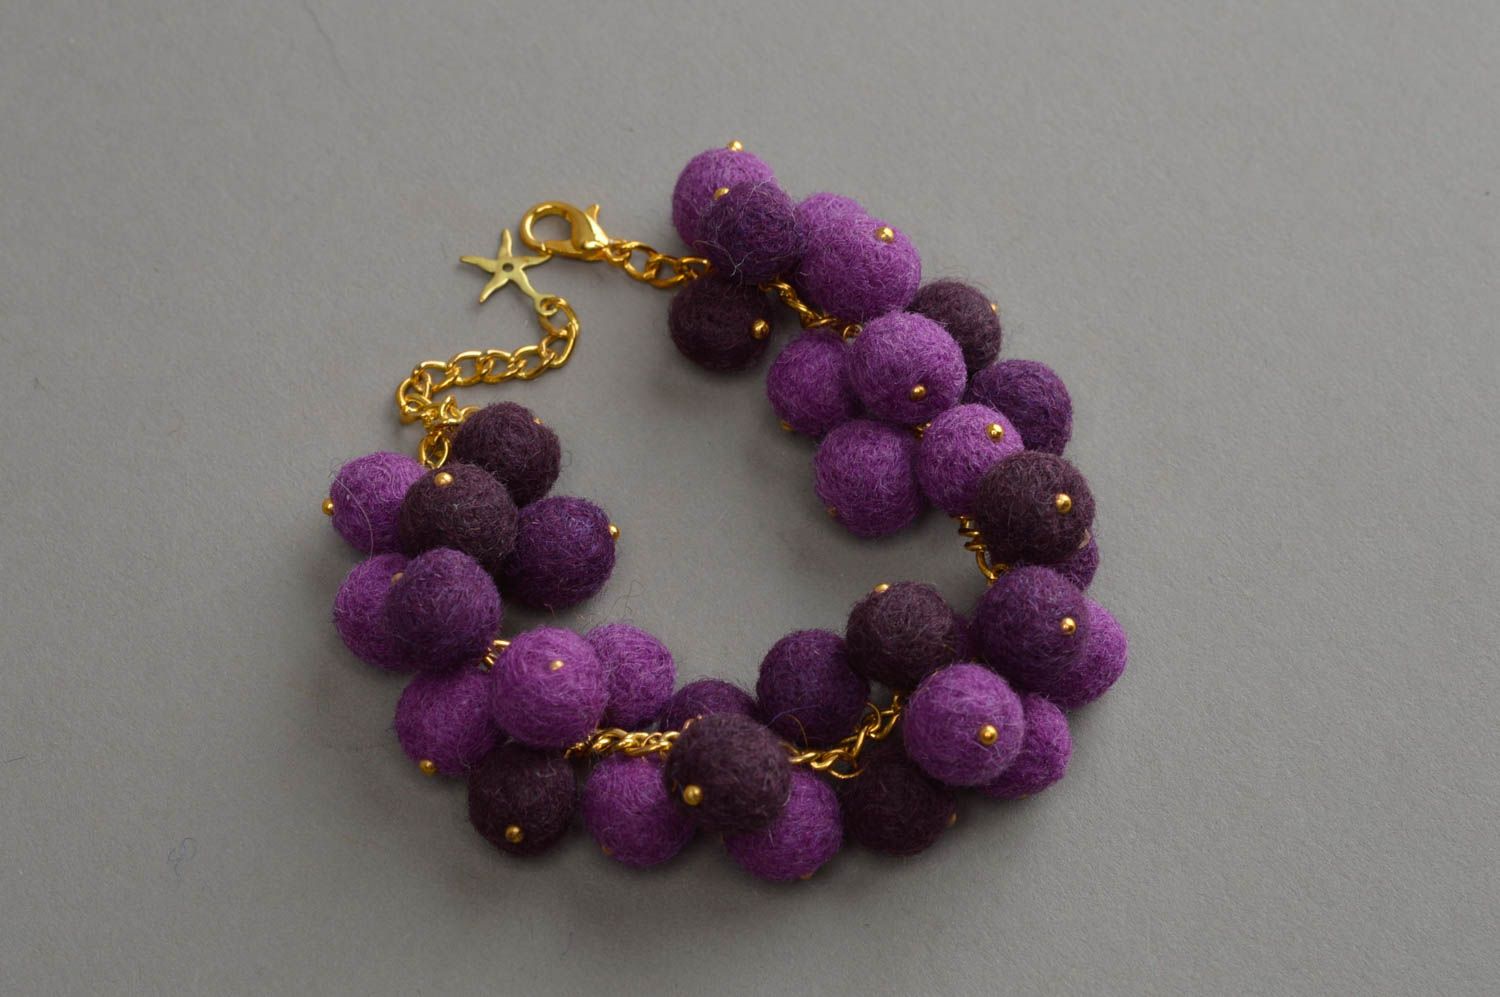 Браслет из шерстяных шариков фиолетовый на цепочке под золото аксессуар хендмейд фото 2